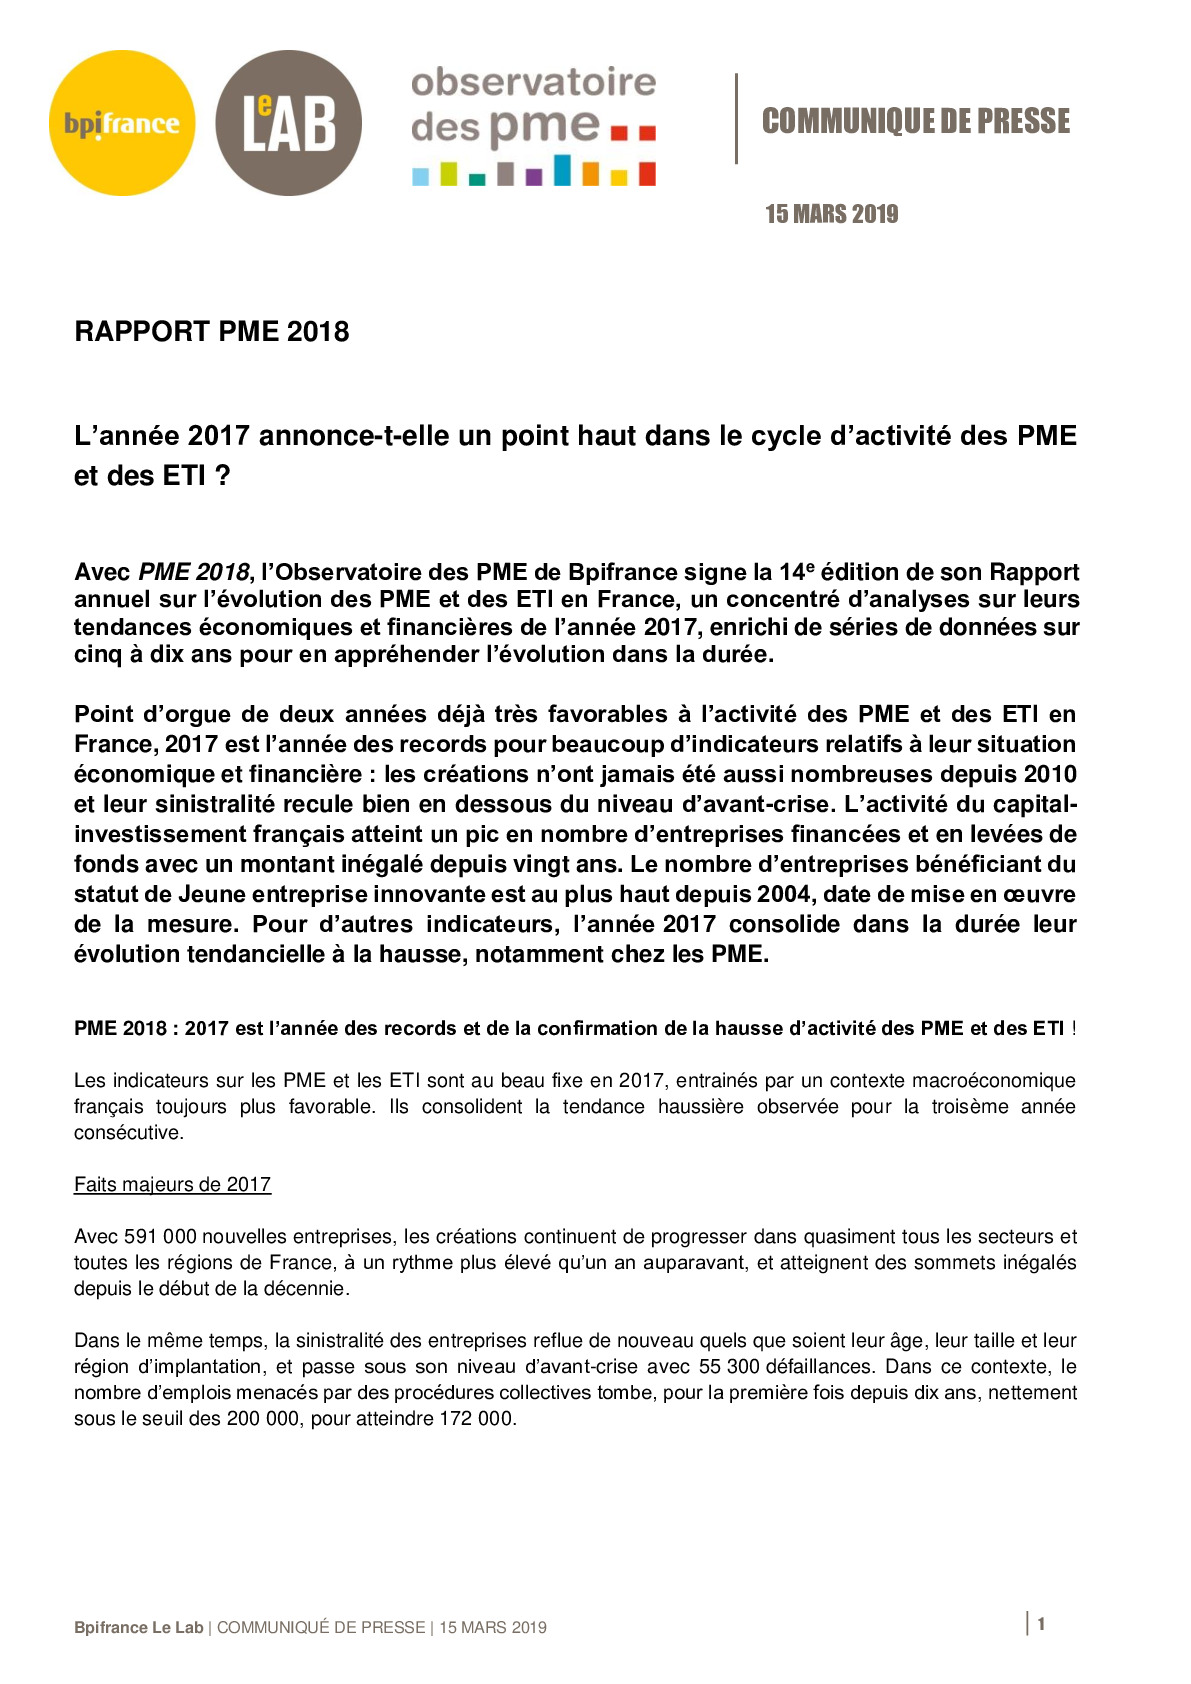 20190315 – Communique de presse Bpifrance – Rapport 2018 Observatoire des PME-pdf